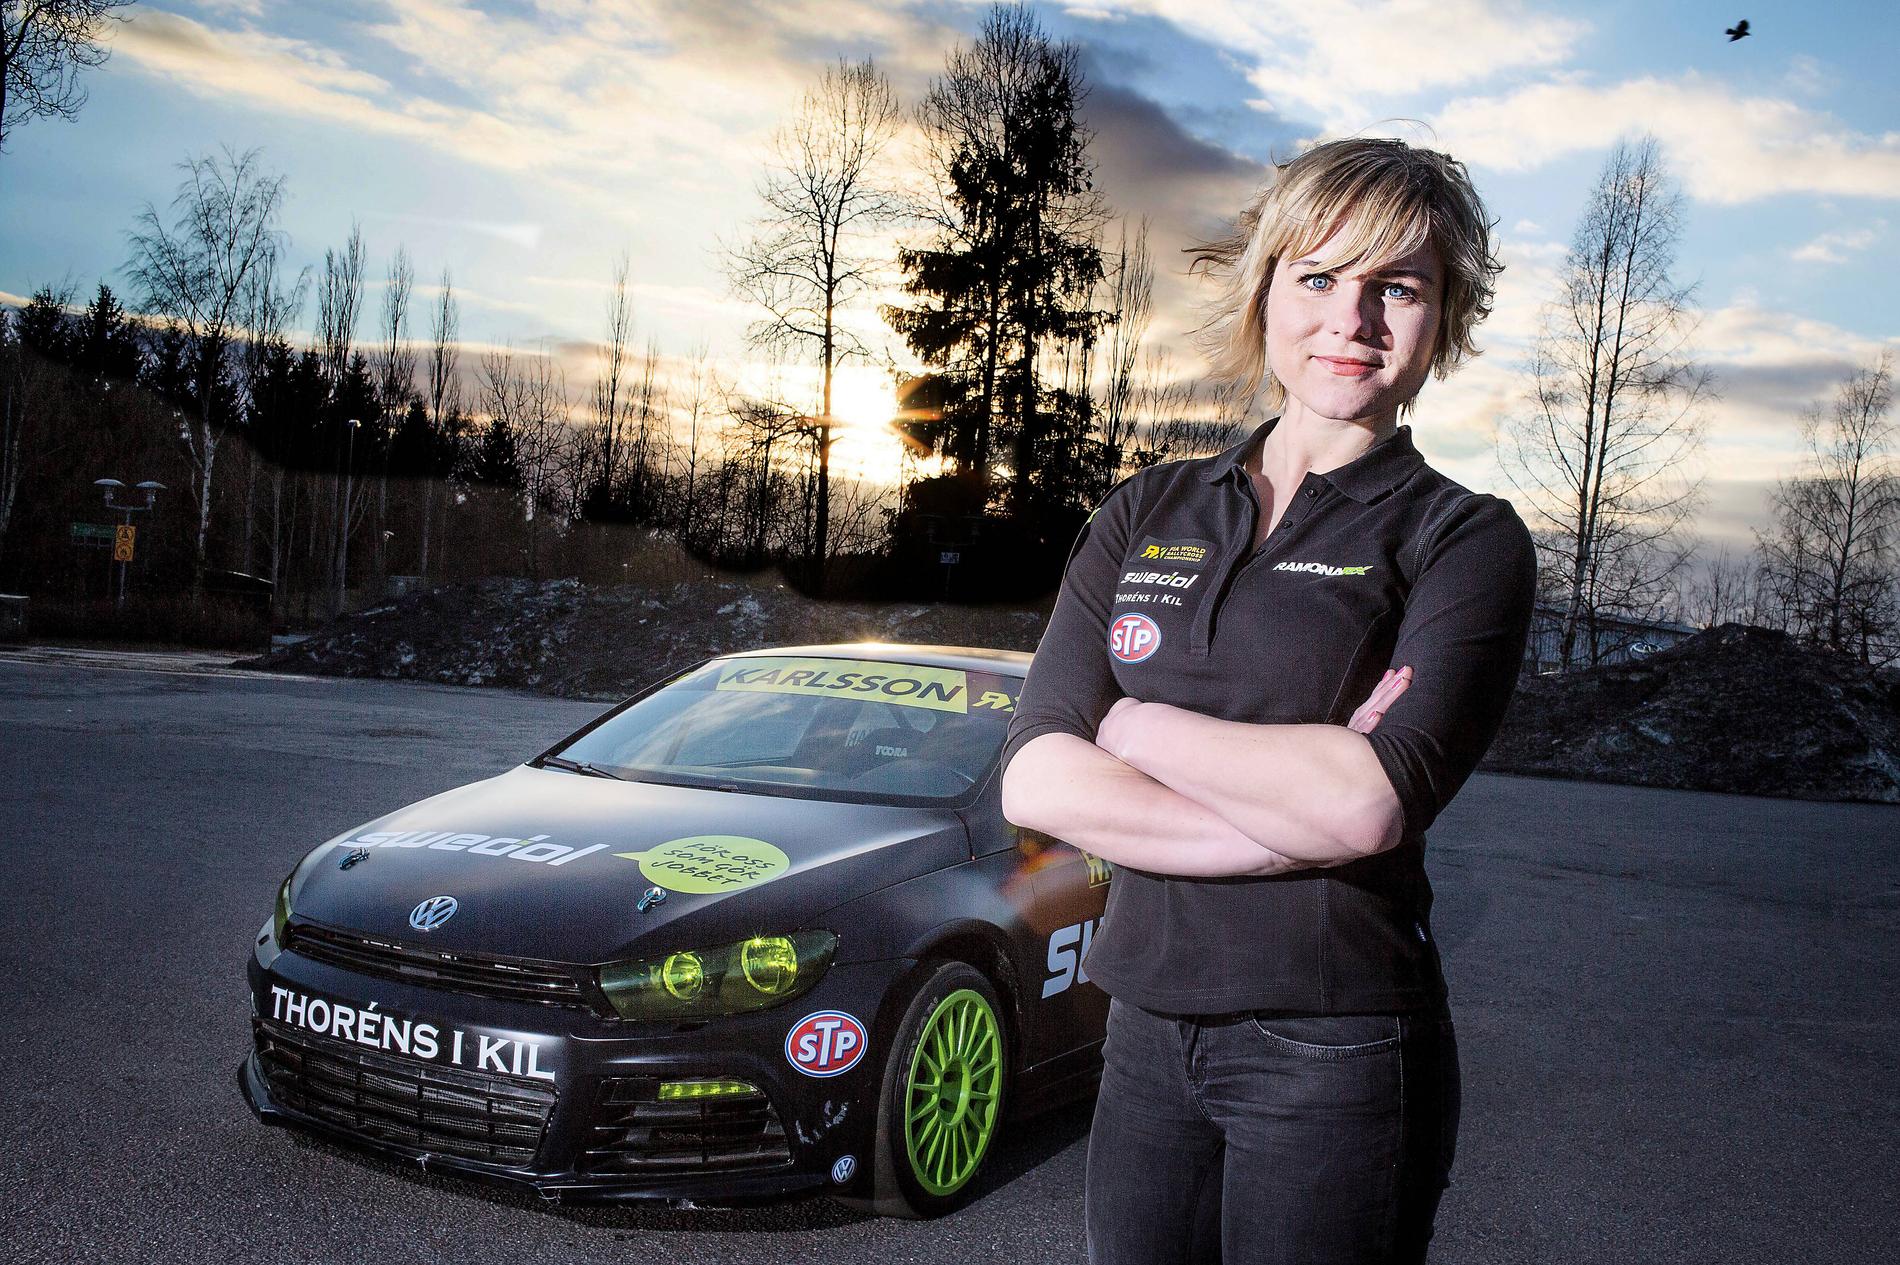 HÅLLER SÄKERHETSKURSER Rallycrosstjärnan Ramona Karlsson vet hur man kör snabbt – men håller också kurser i  trafiksäkerhet för förare som vill lära sig att bli säkrare bakom ratten.